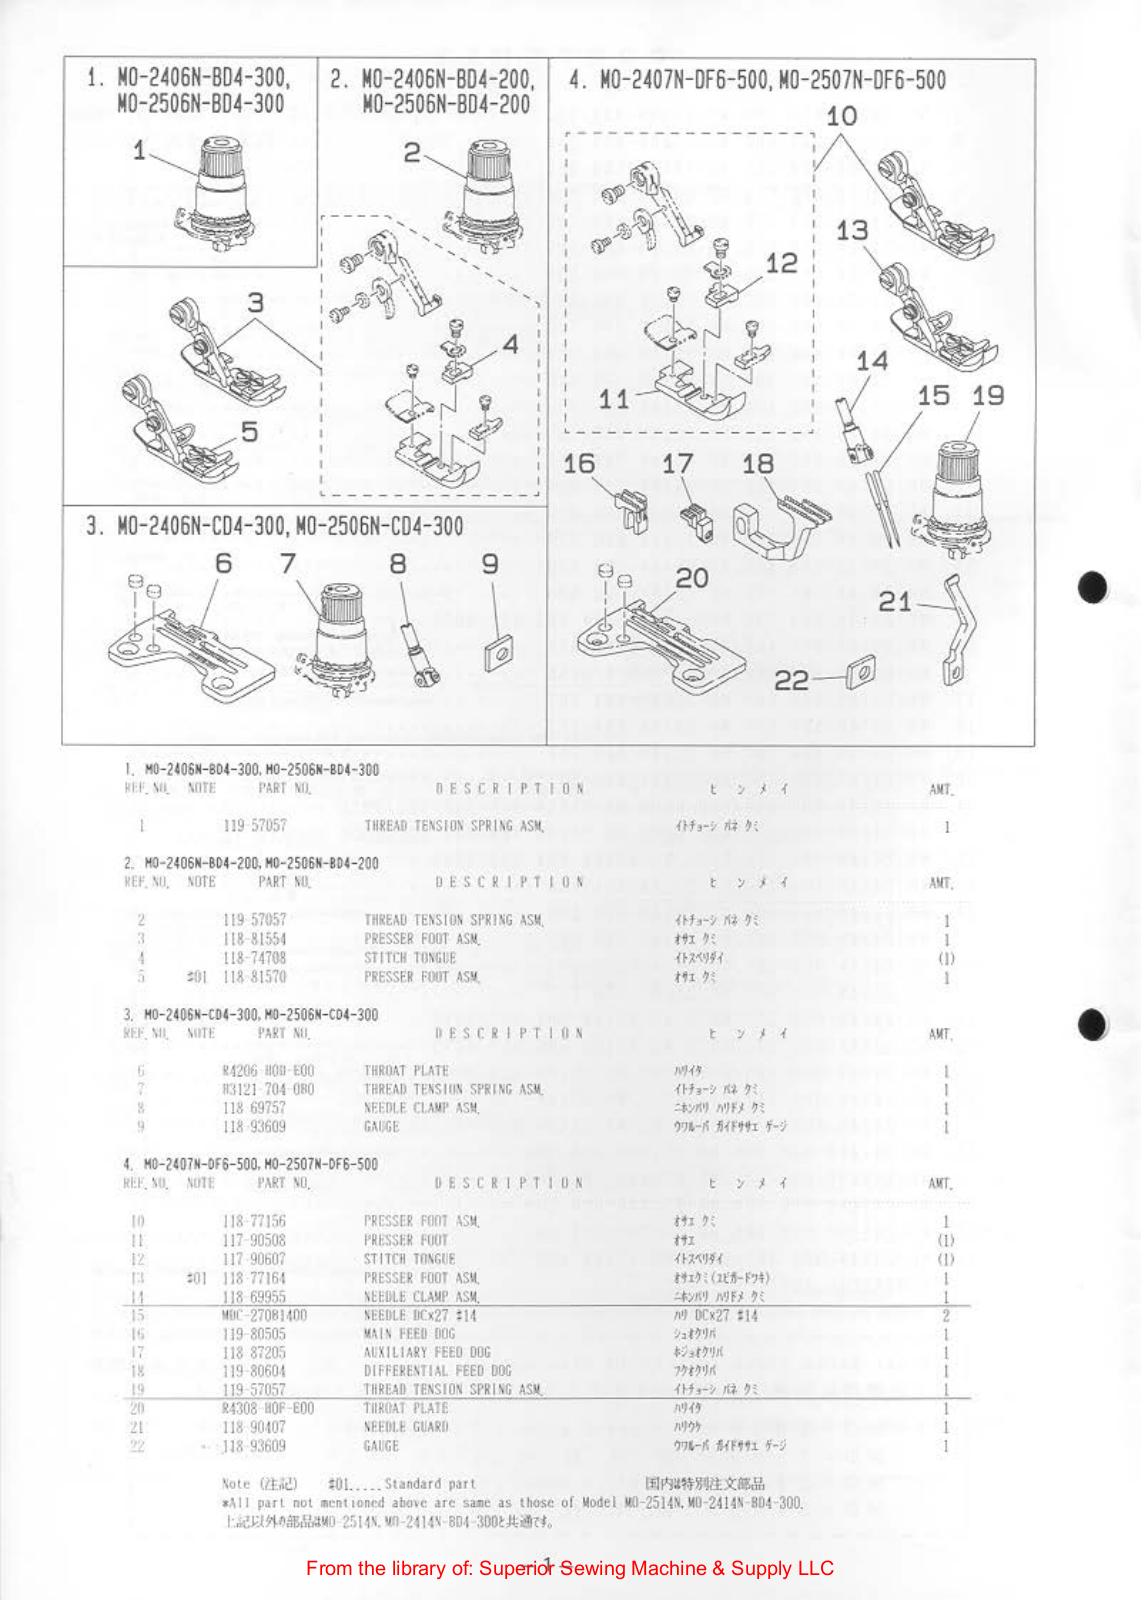 Juki N0-2406N-B04-300, N0-2506N-B04-300, N0-2406N-B04-200, M0-2506N-B04-200, M0-2406N-C04-300 Manual